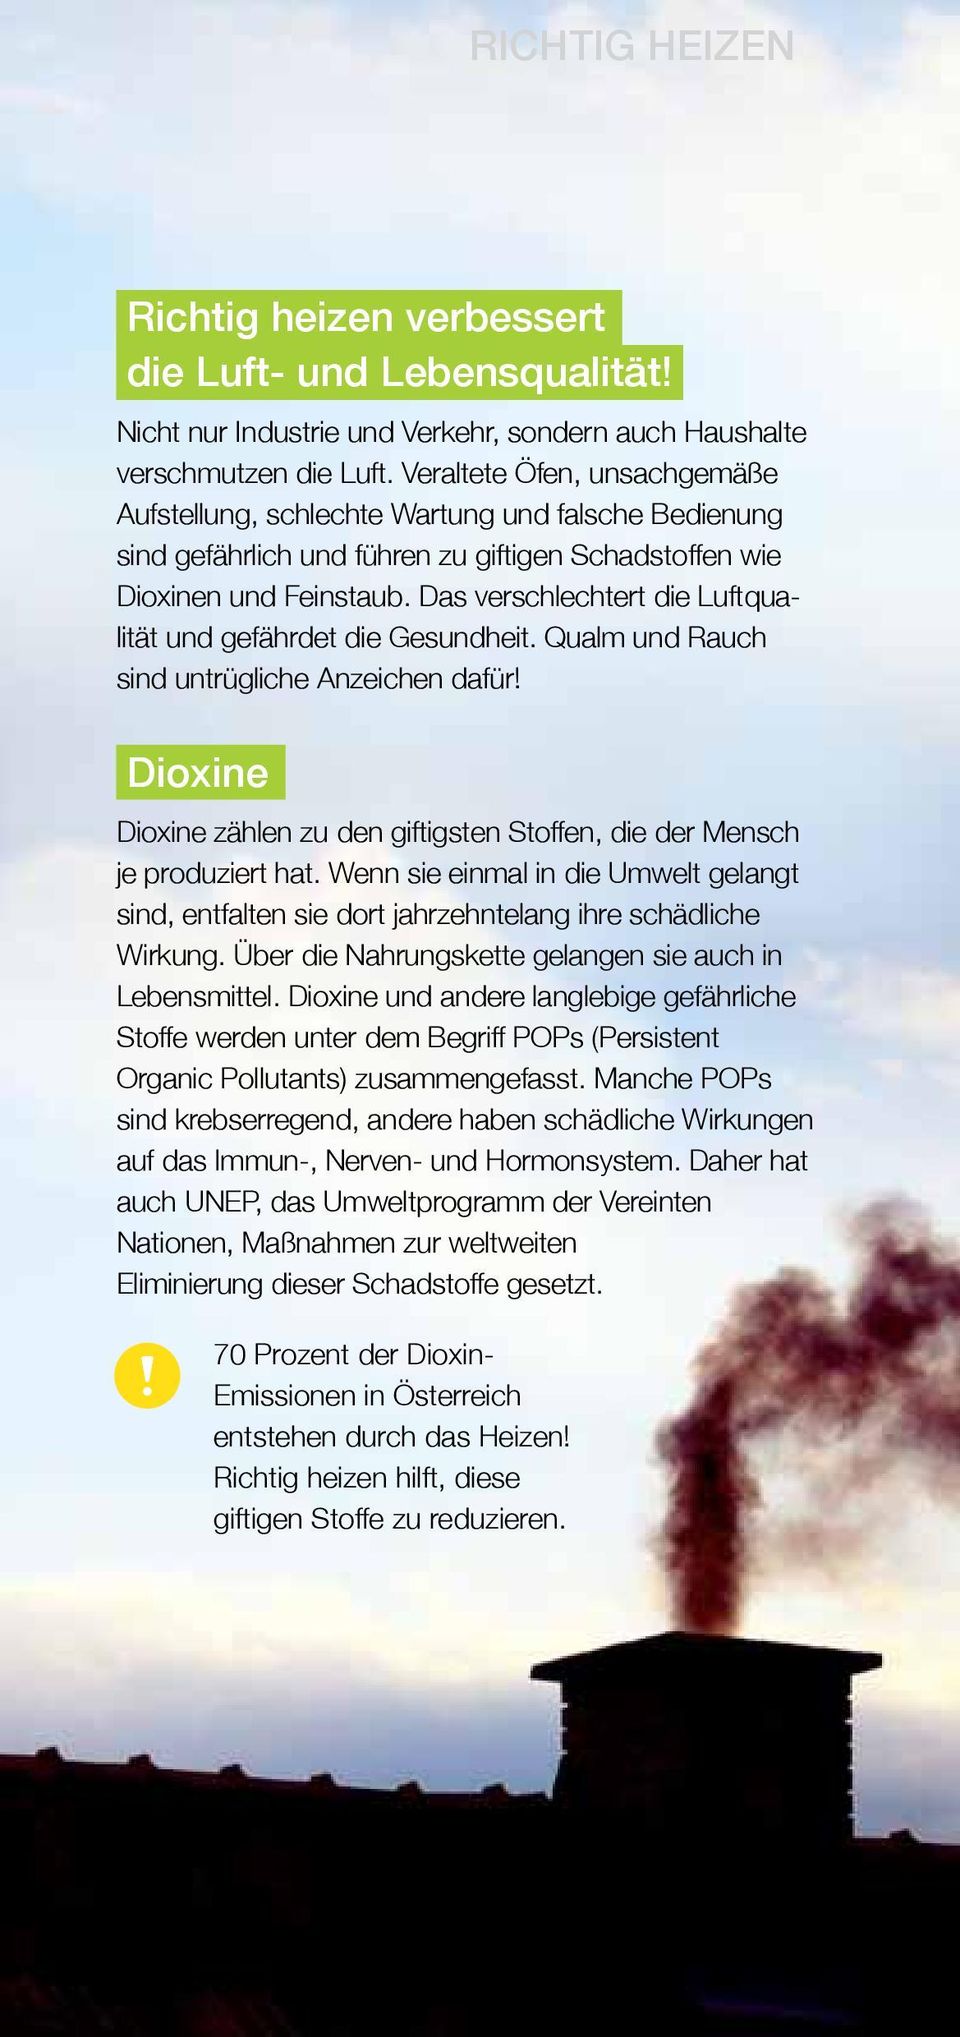 Das verschlechtert die Luftqualität und gefährdet die Gesundheit. Qualm und Rauch sind untrügliche Anzeichen dafür! Dioxine Dioxine zählen zu den giftigsten Stoffen, die der Mensch je produziert hat.